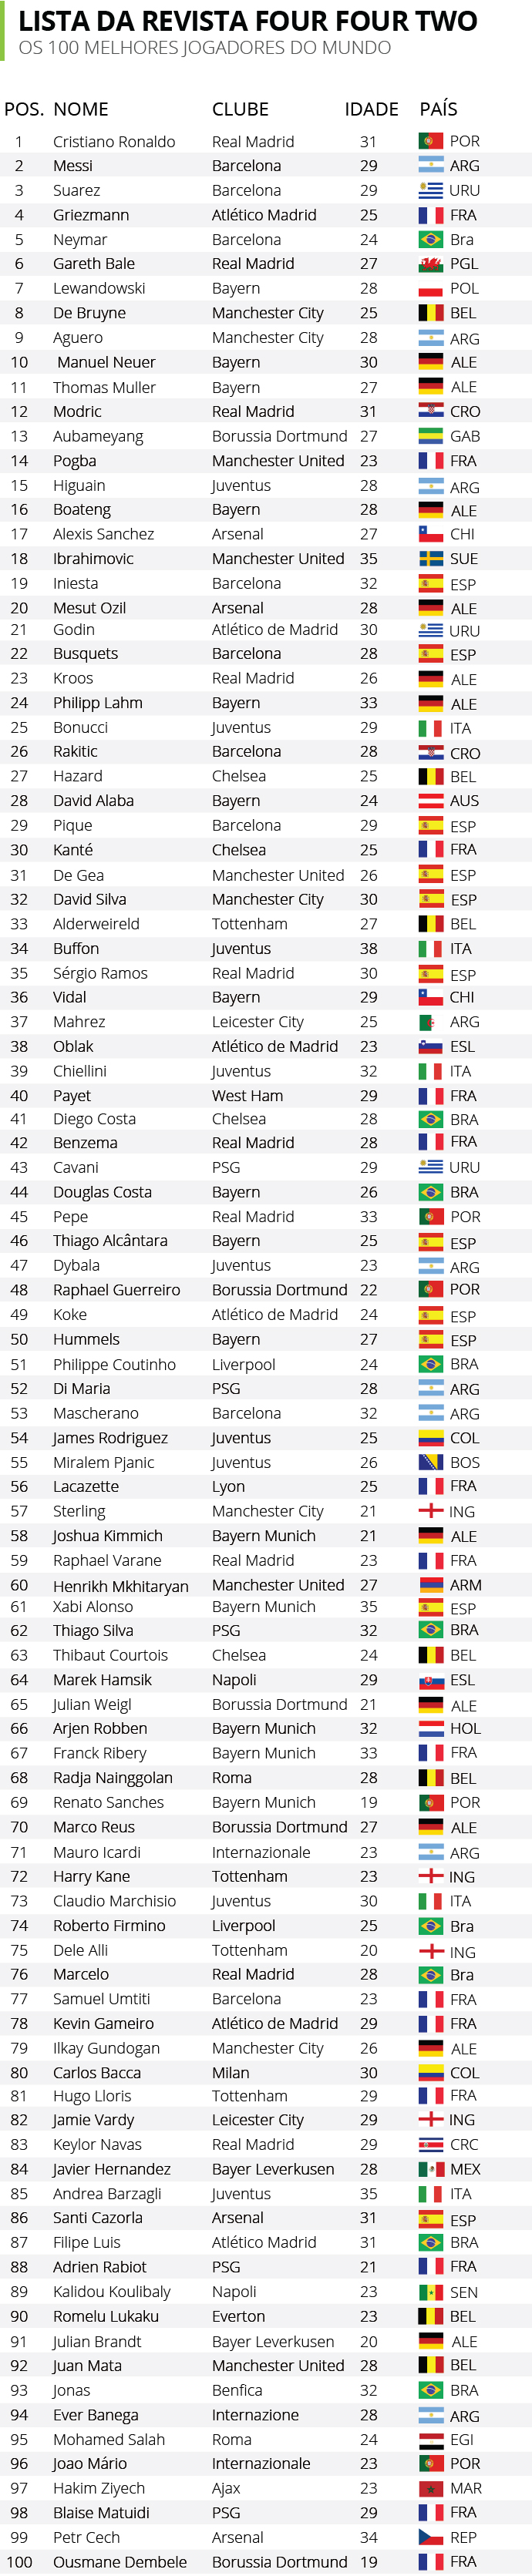 100 Melhores jogadores do mundo, segundo a revista inglesa “Four